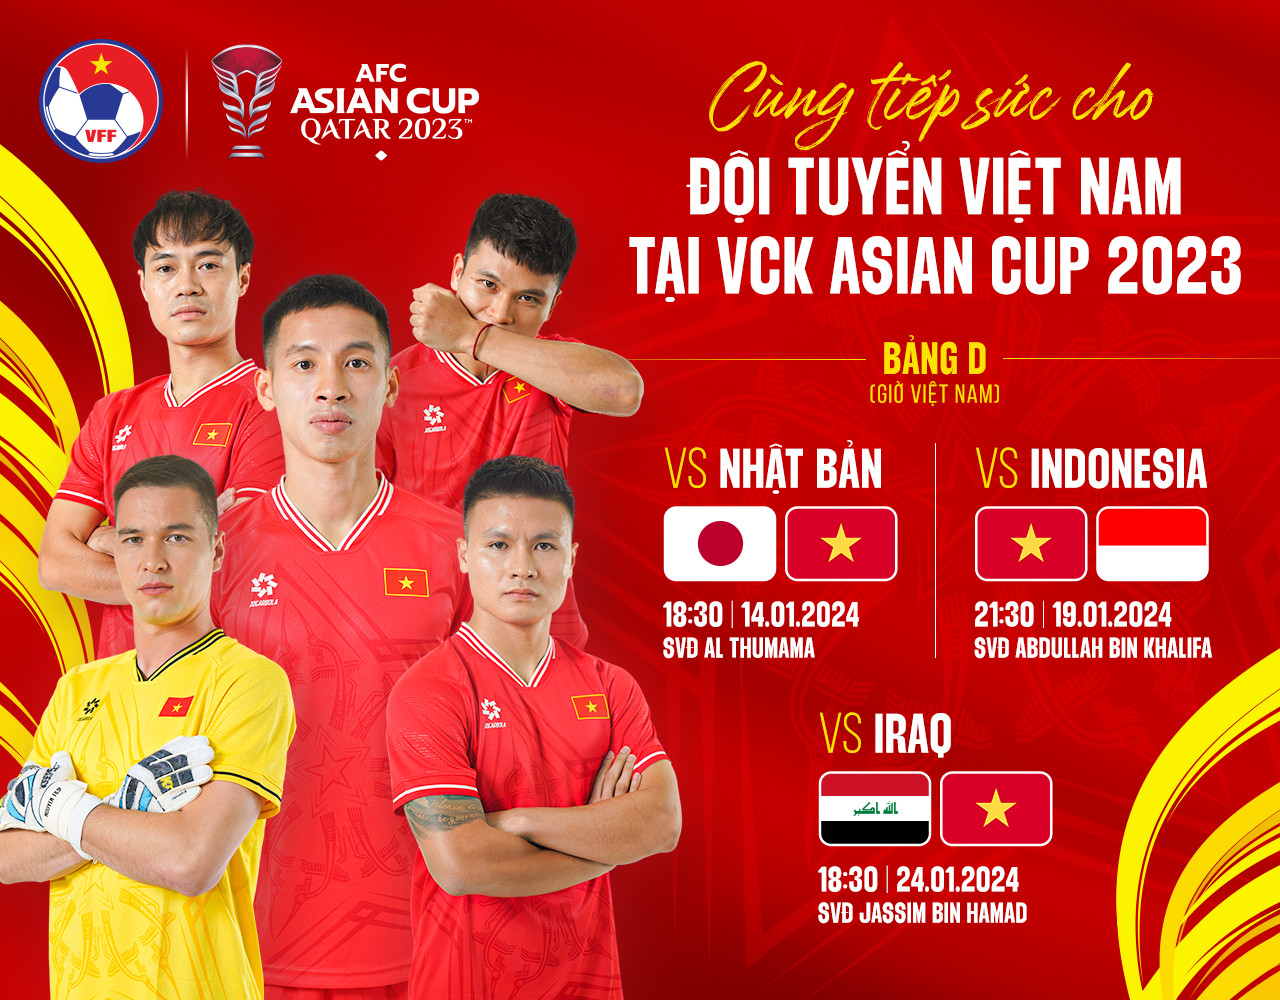 Xem trực tiếp đội tuyển Việt Nam đấu Nhật Bản tại Asian Cup 2023 trên kênh nào?- Ảnh 1.